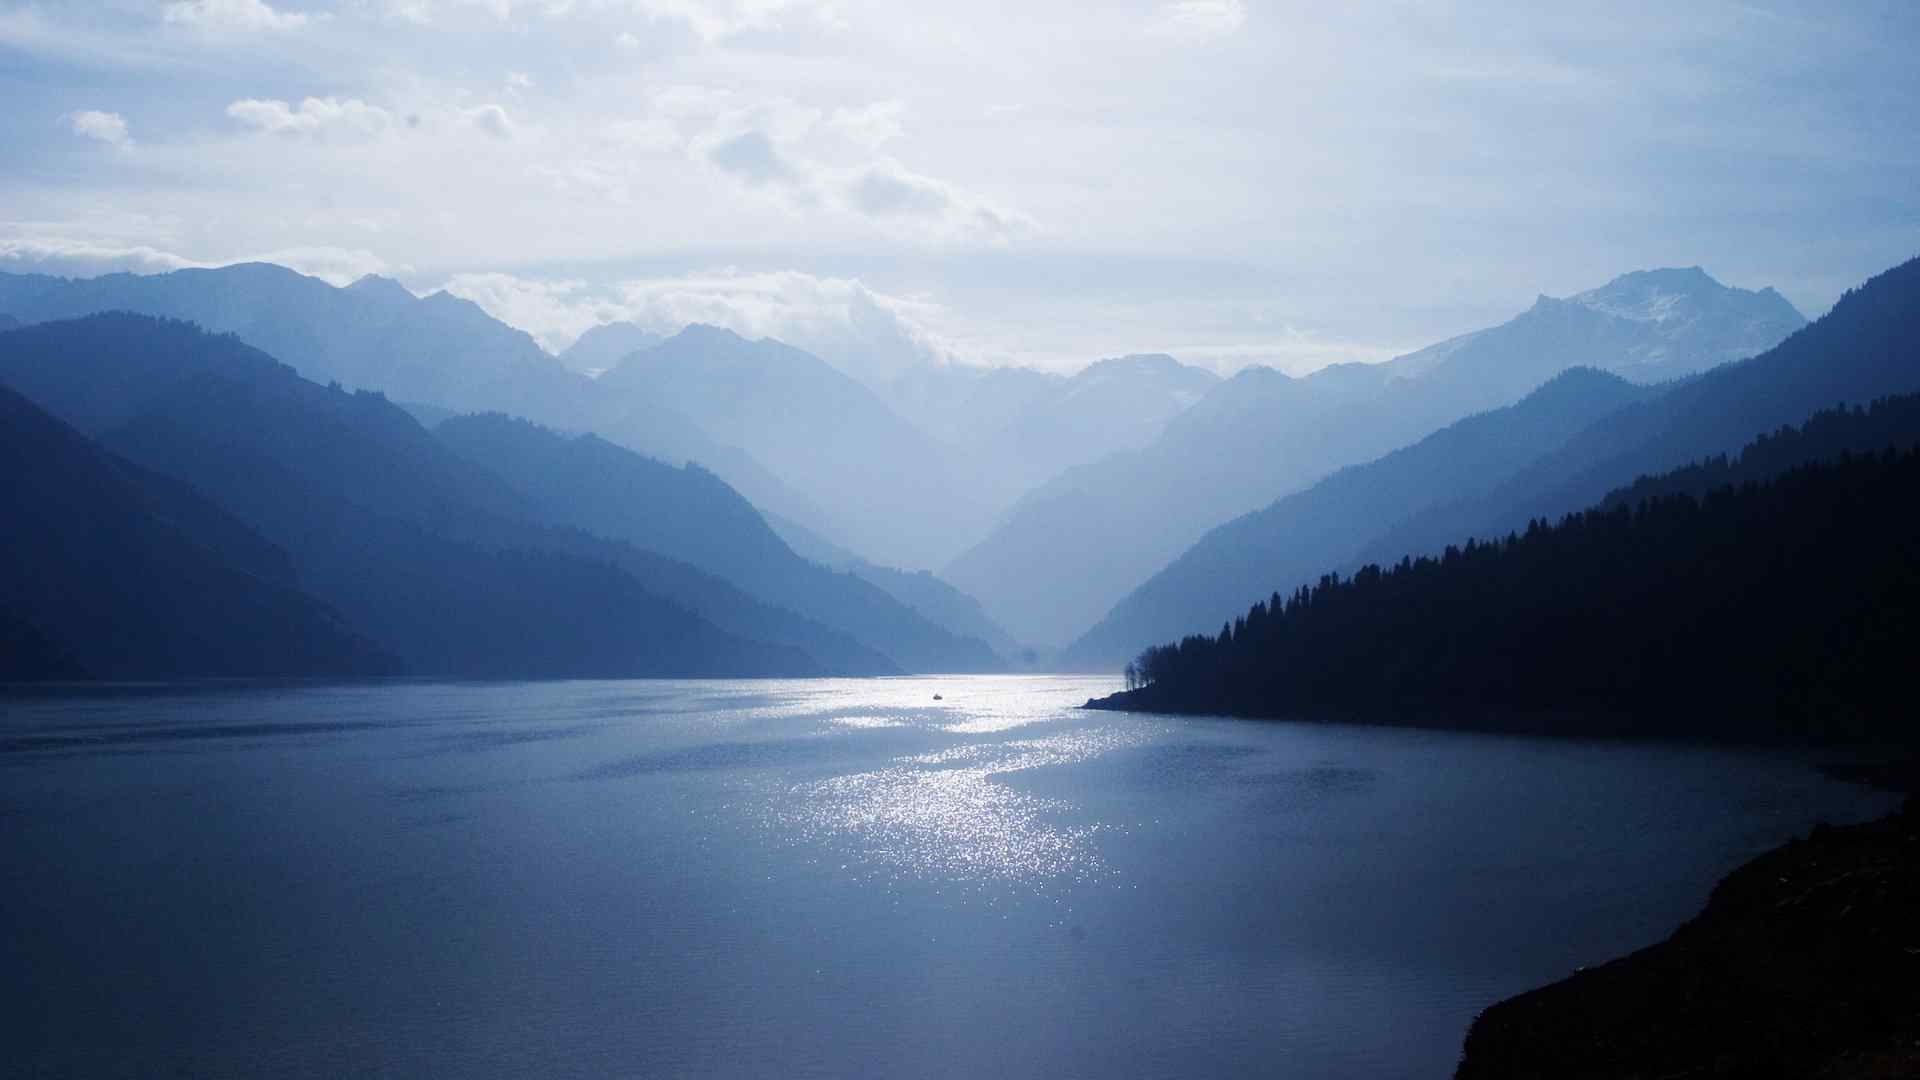 清新宜人的湖泊山水风景电脑壁纸 第一辑